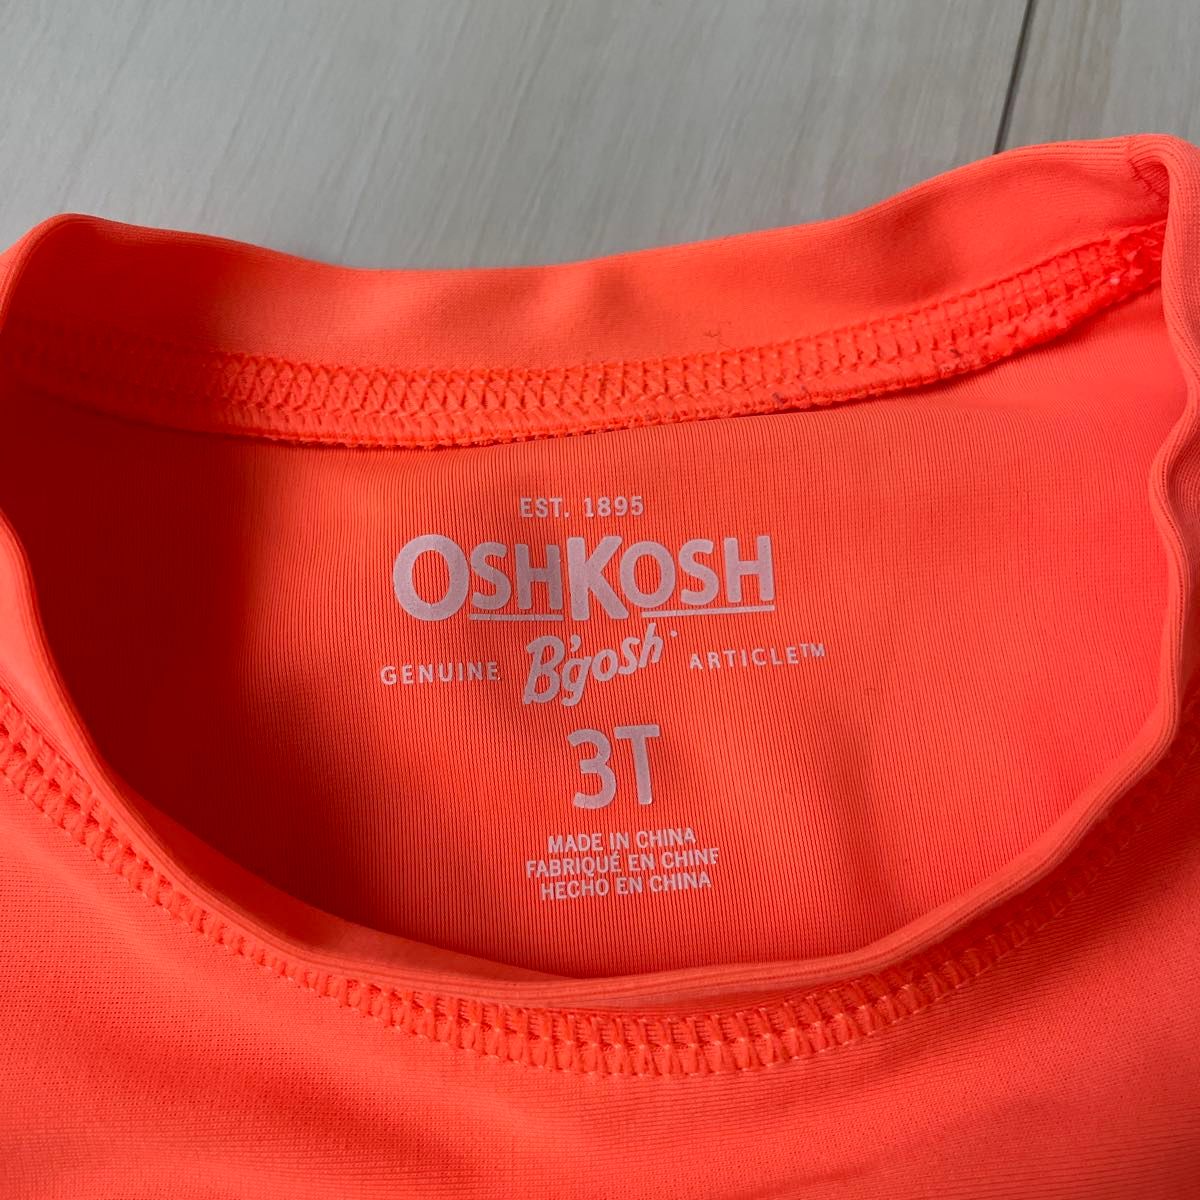 キッズラッシュガード、OSHKOSH海外で購入した、海外ブランドのラッシュです。水着